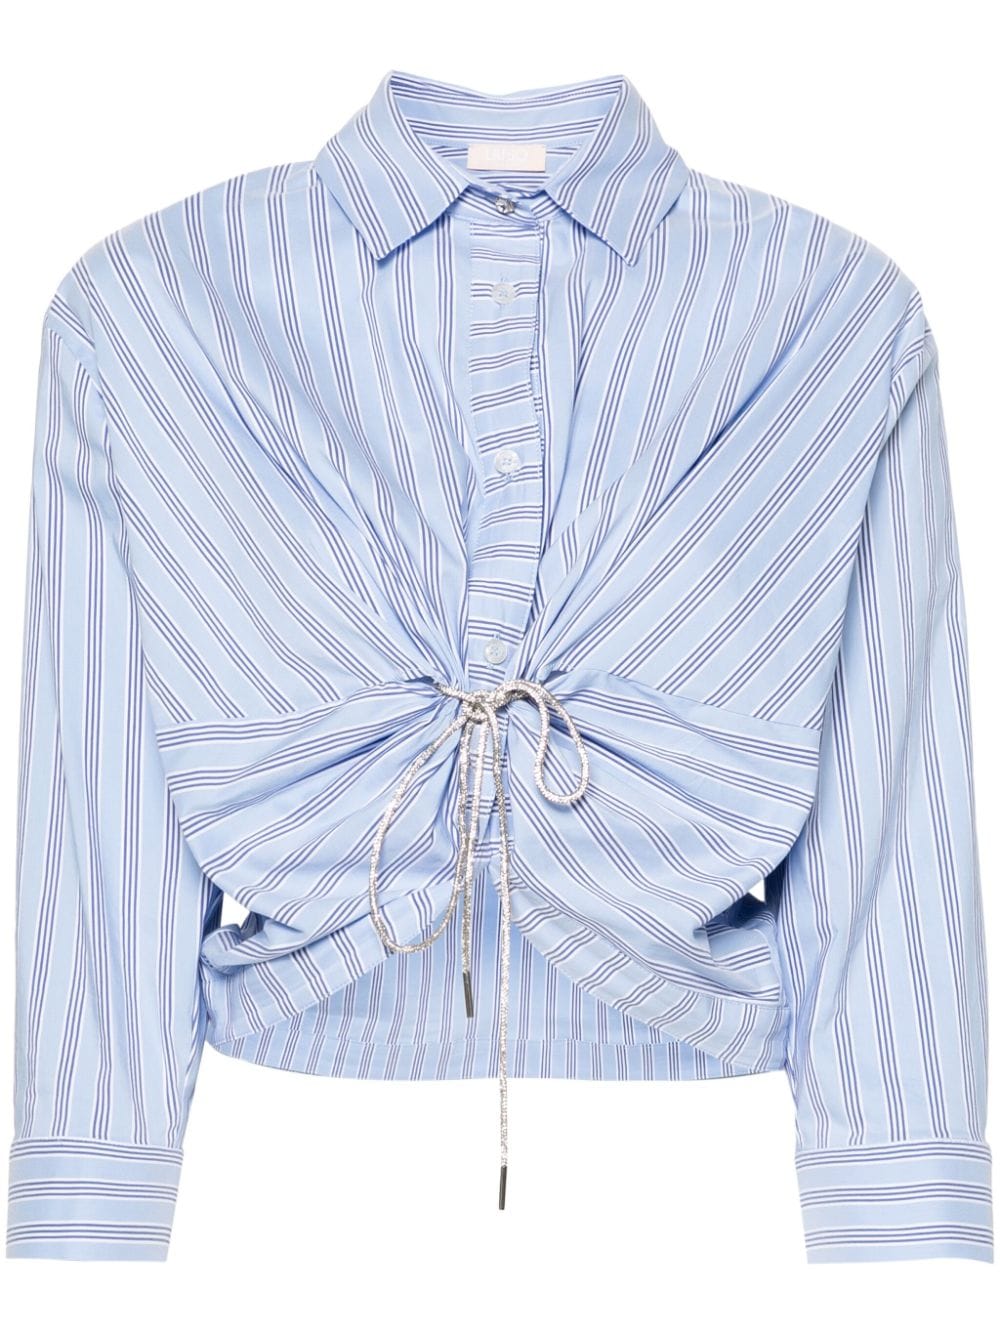 rhinestone-embellished striped shirt